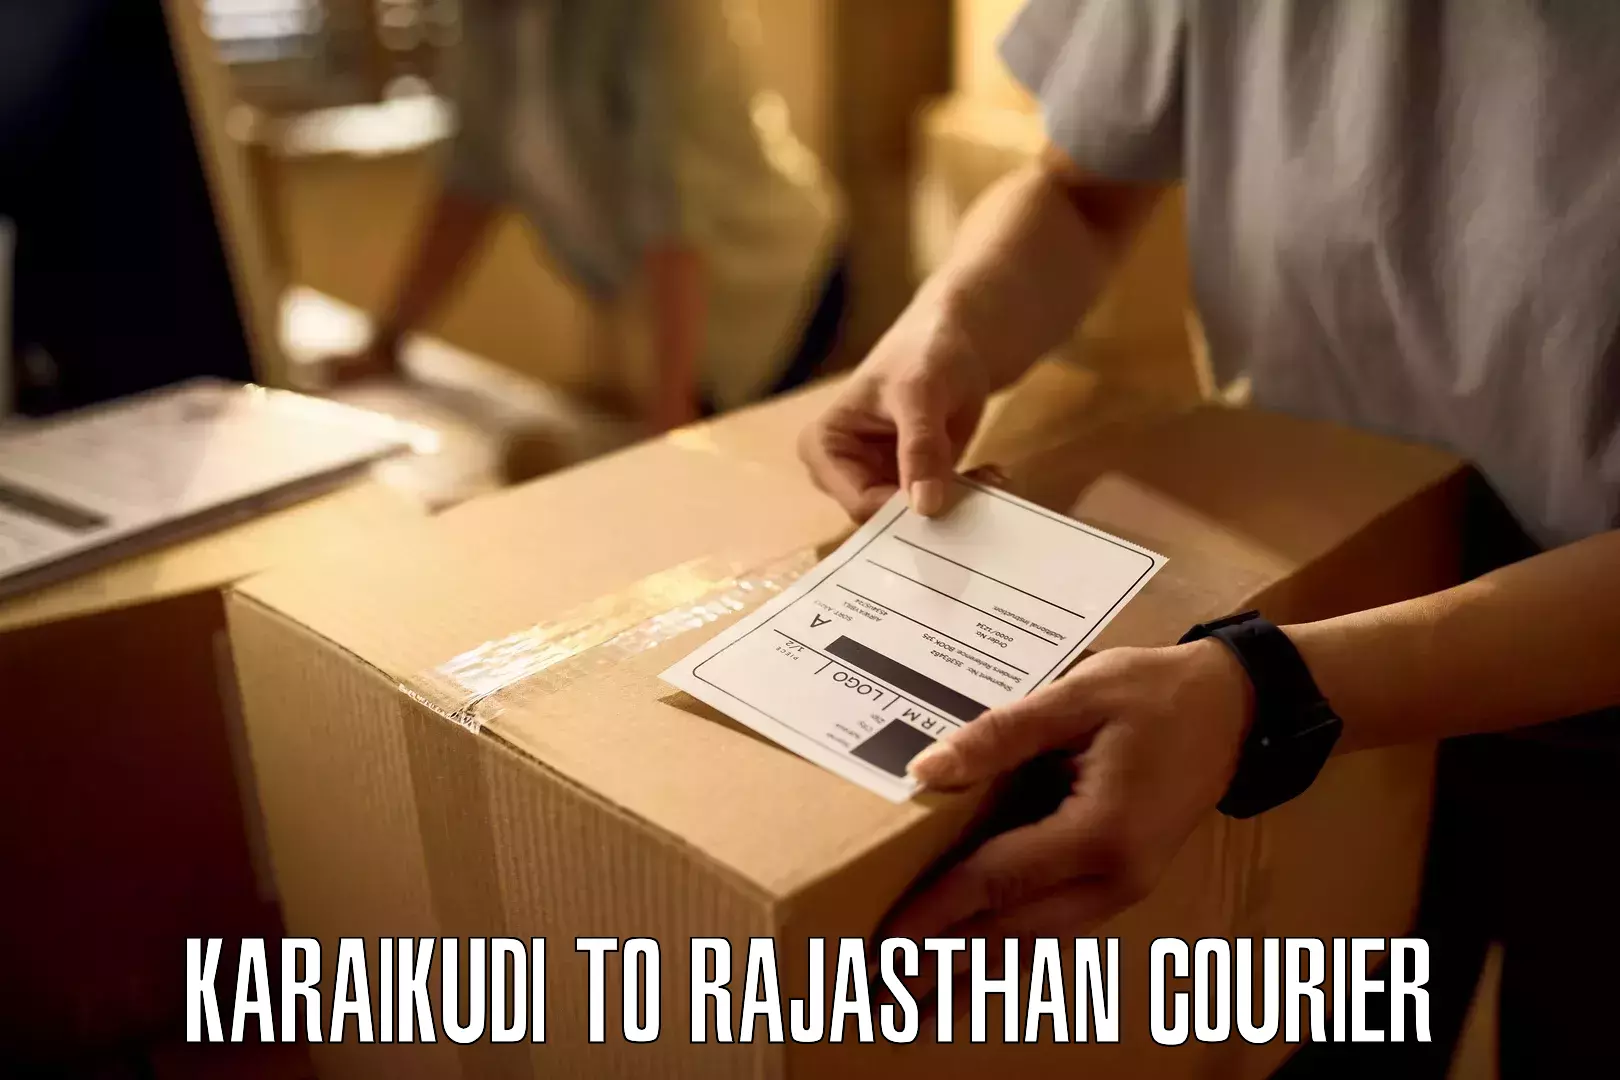 Next-day delivery options Karaikudi to Rajasthan